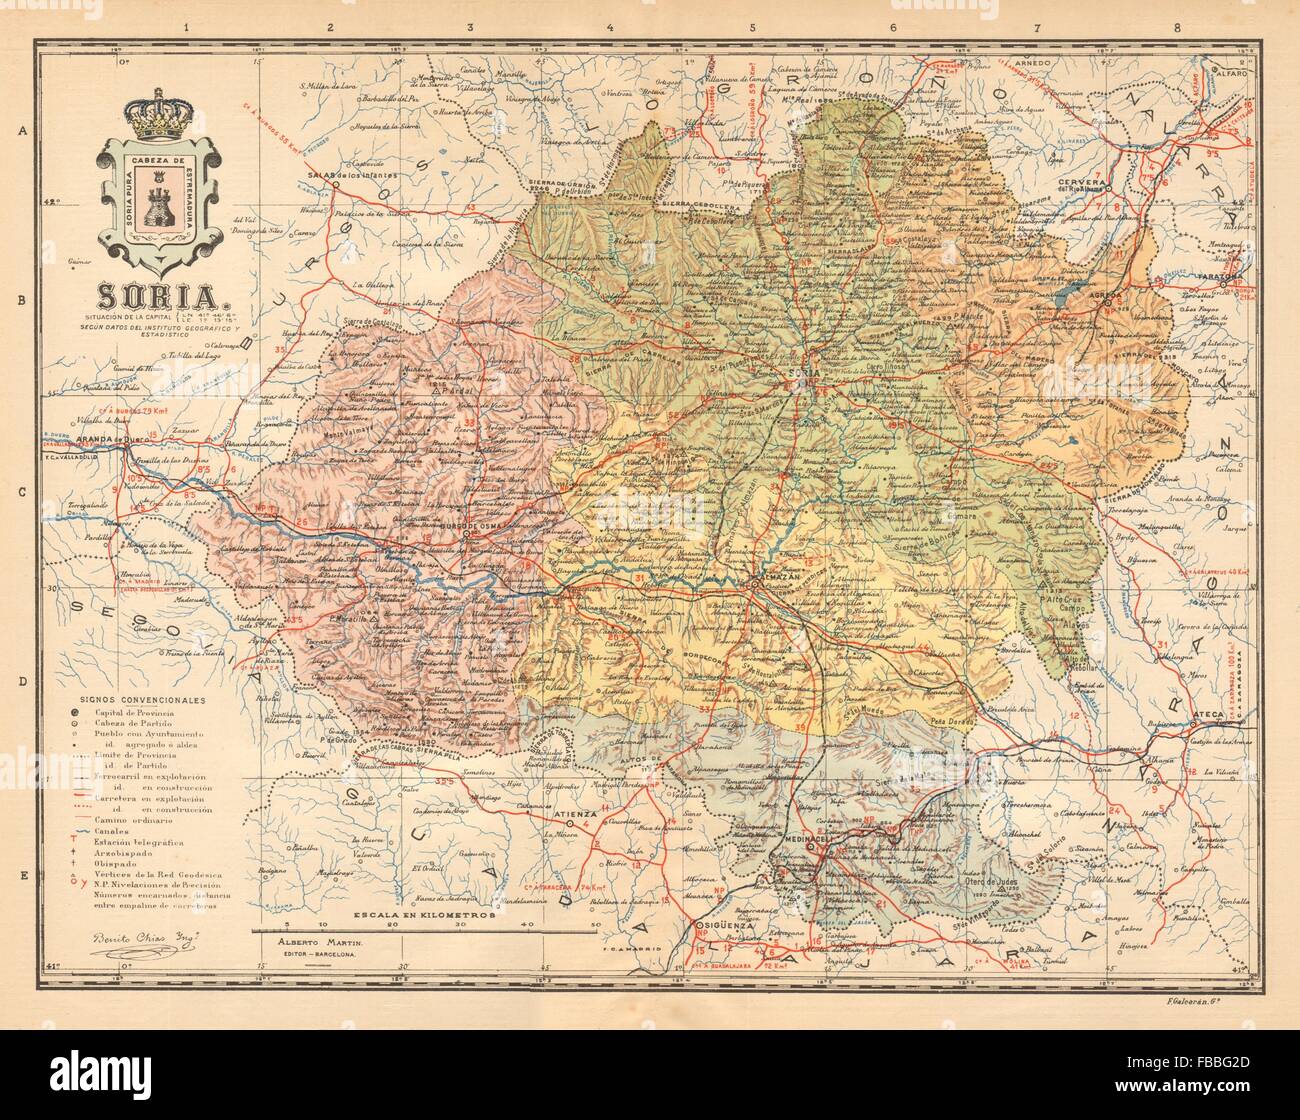 SORIA. Castilla y León. Mapa antiguo de la provincia. ALBERTO MARTIN, c1911 Stock Photo